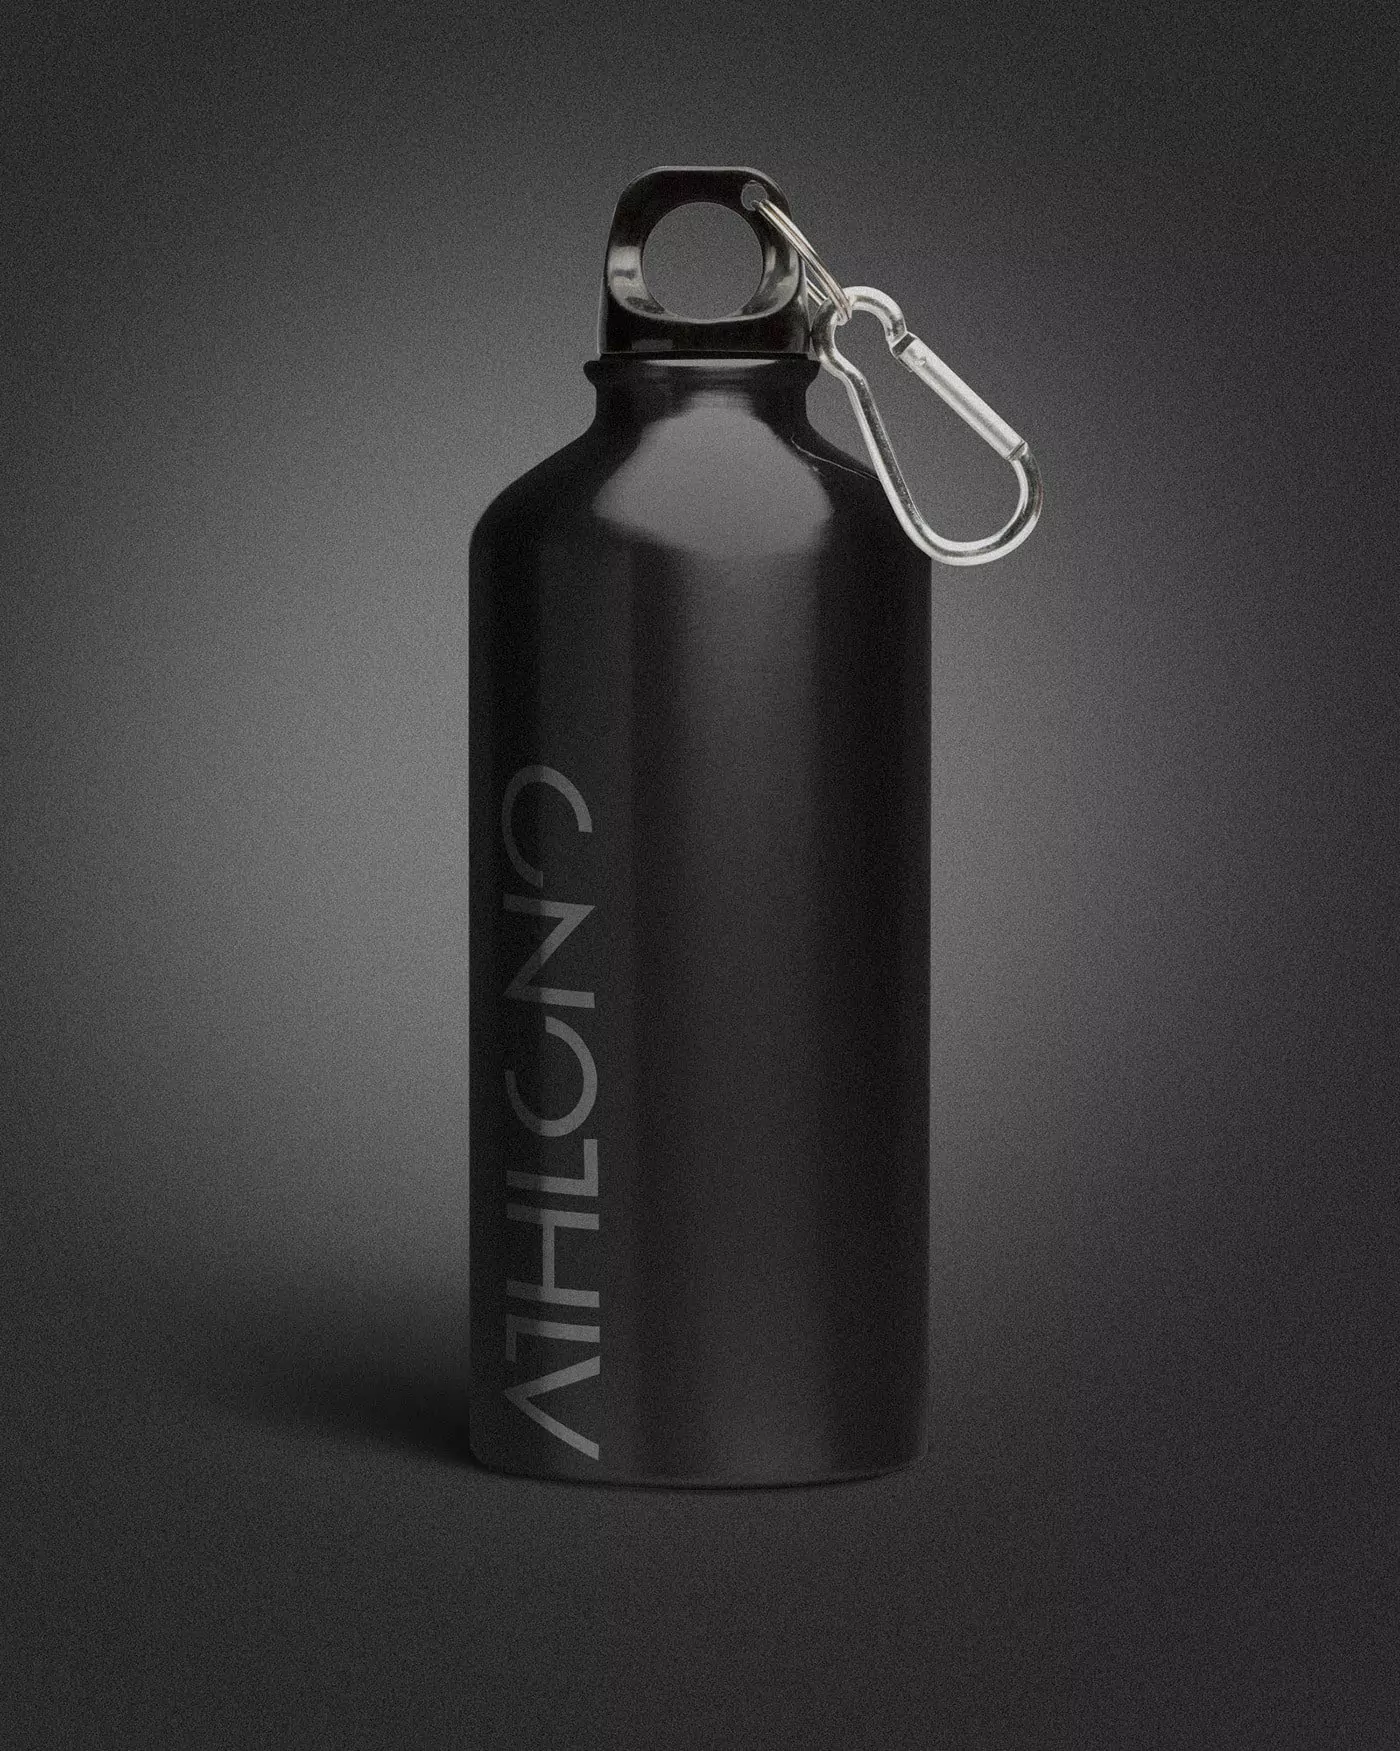 Athlono Brand Identity - Bottle